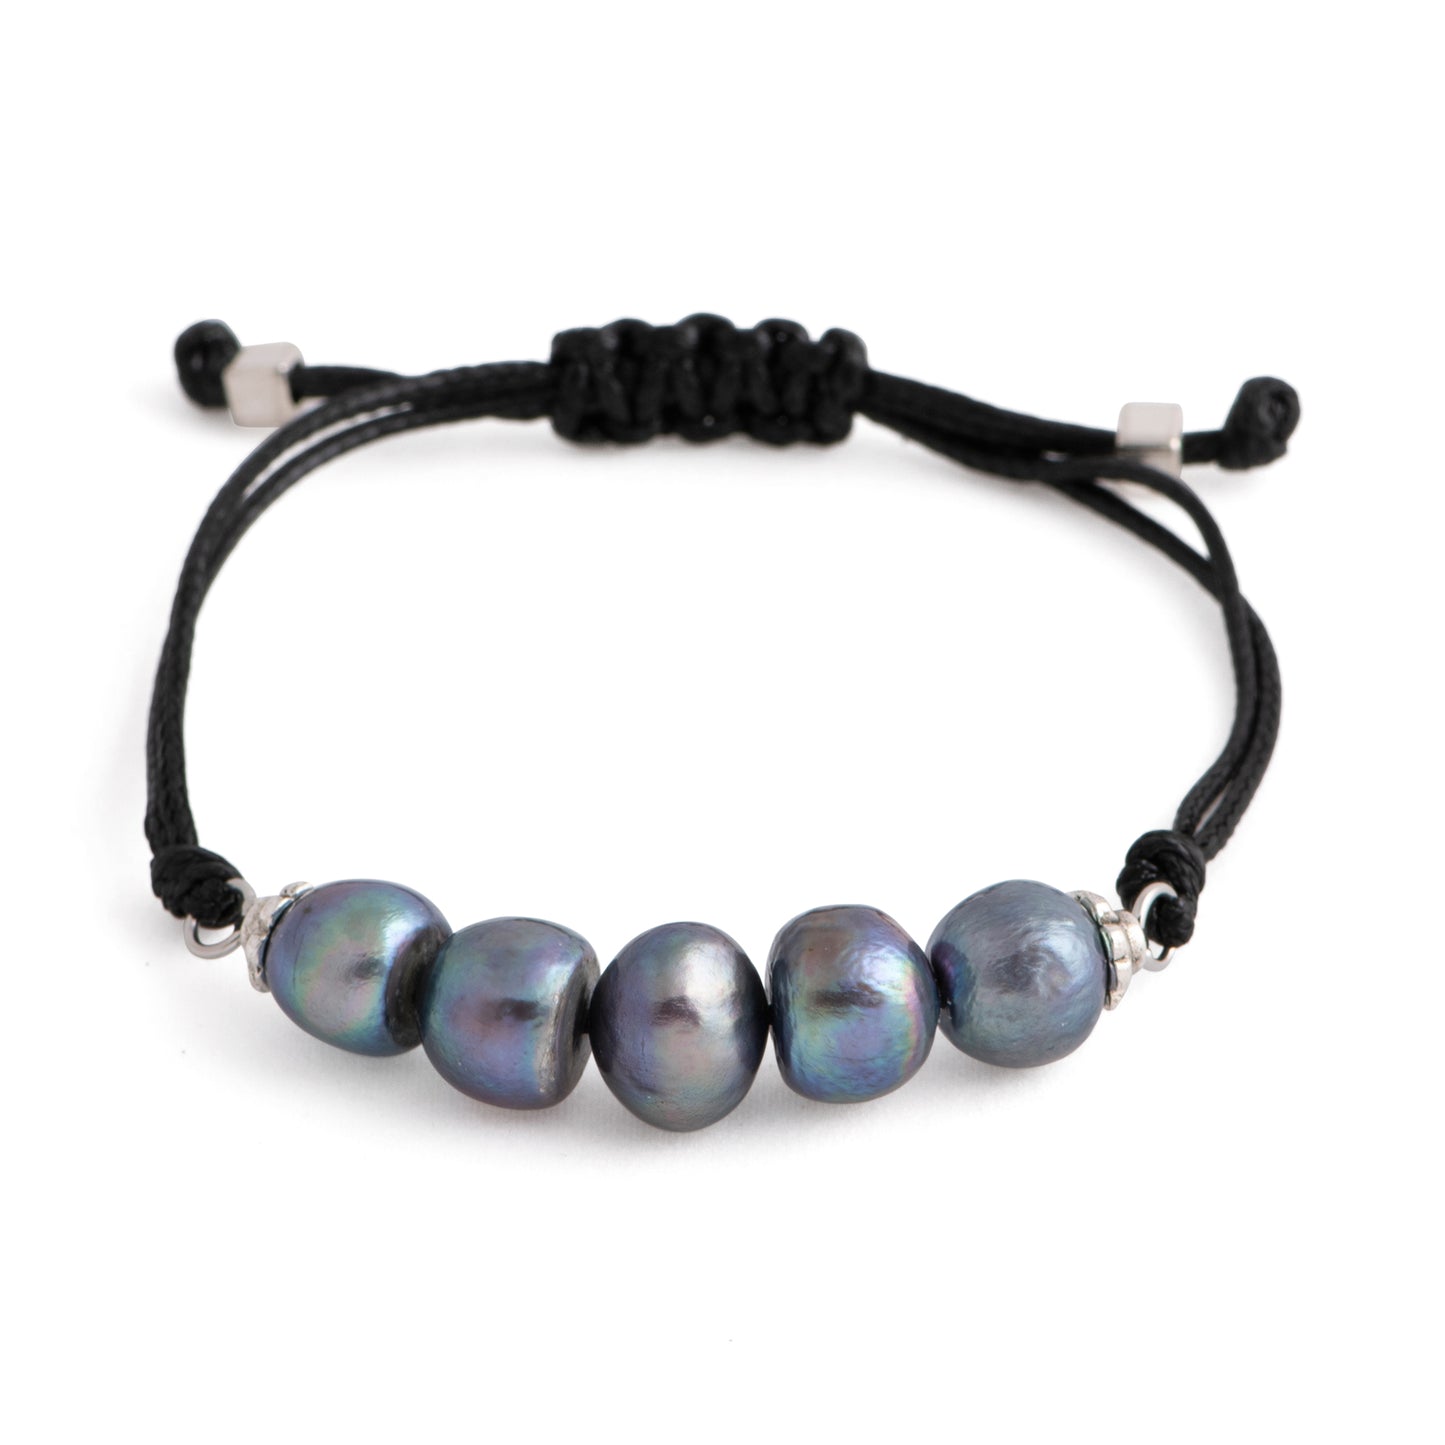 Aegean - Five freshwater pearl adjustable string bracelet (Black strand, dark grey pearls)